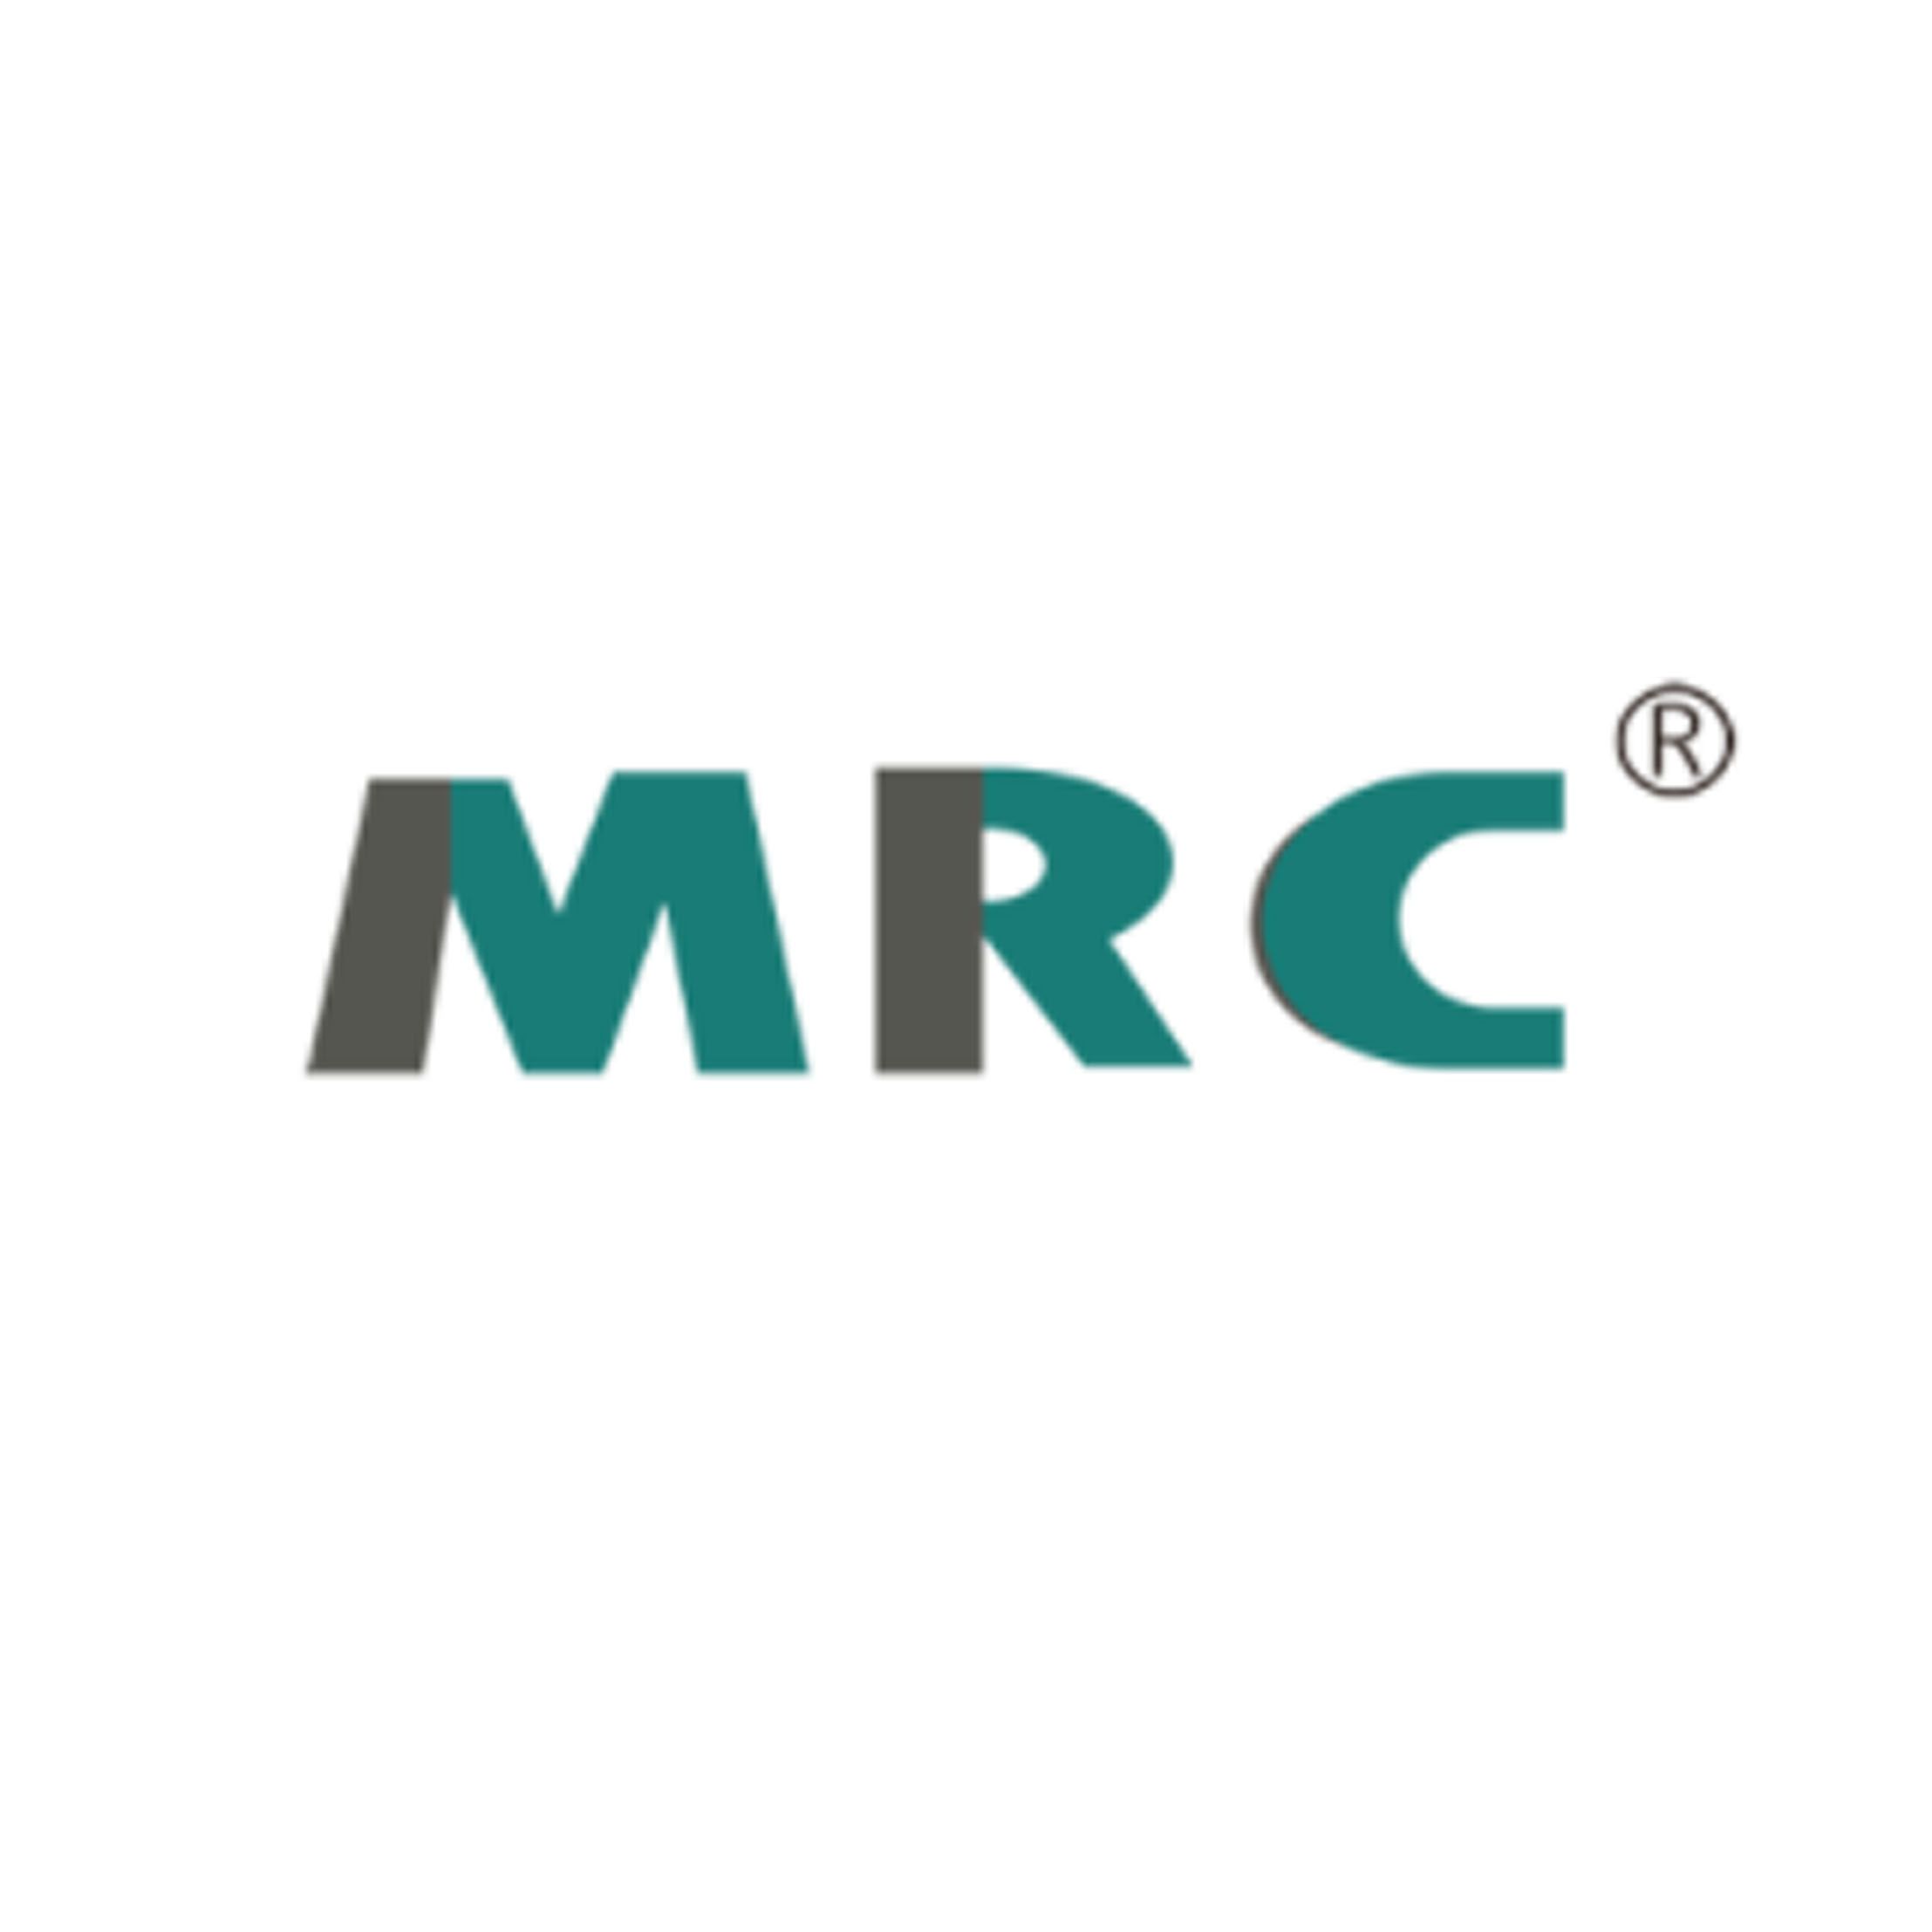 MRC 新西兰小牛血清、细胞培养级别 牛血清白蛋白 无脂肪酸、澳洲胎牛血清